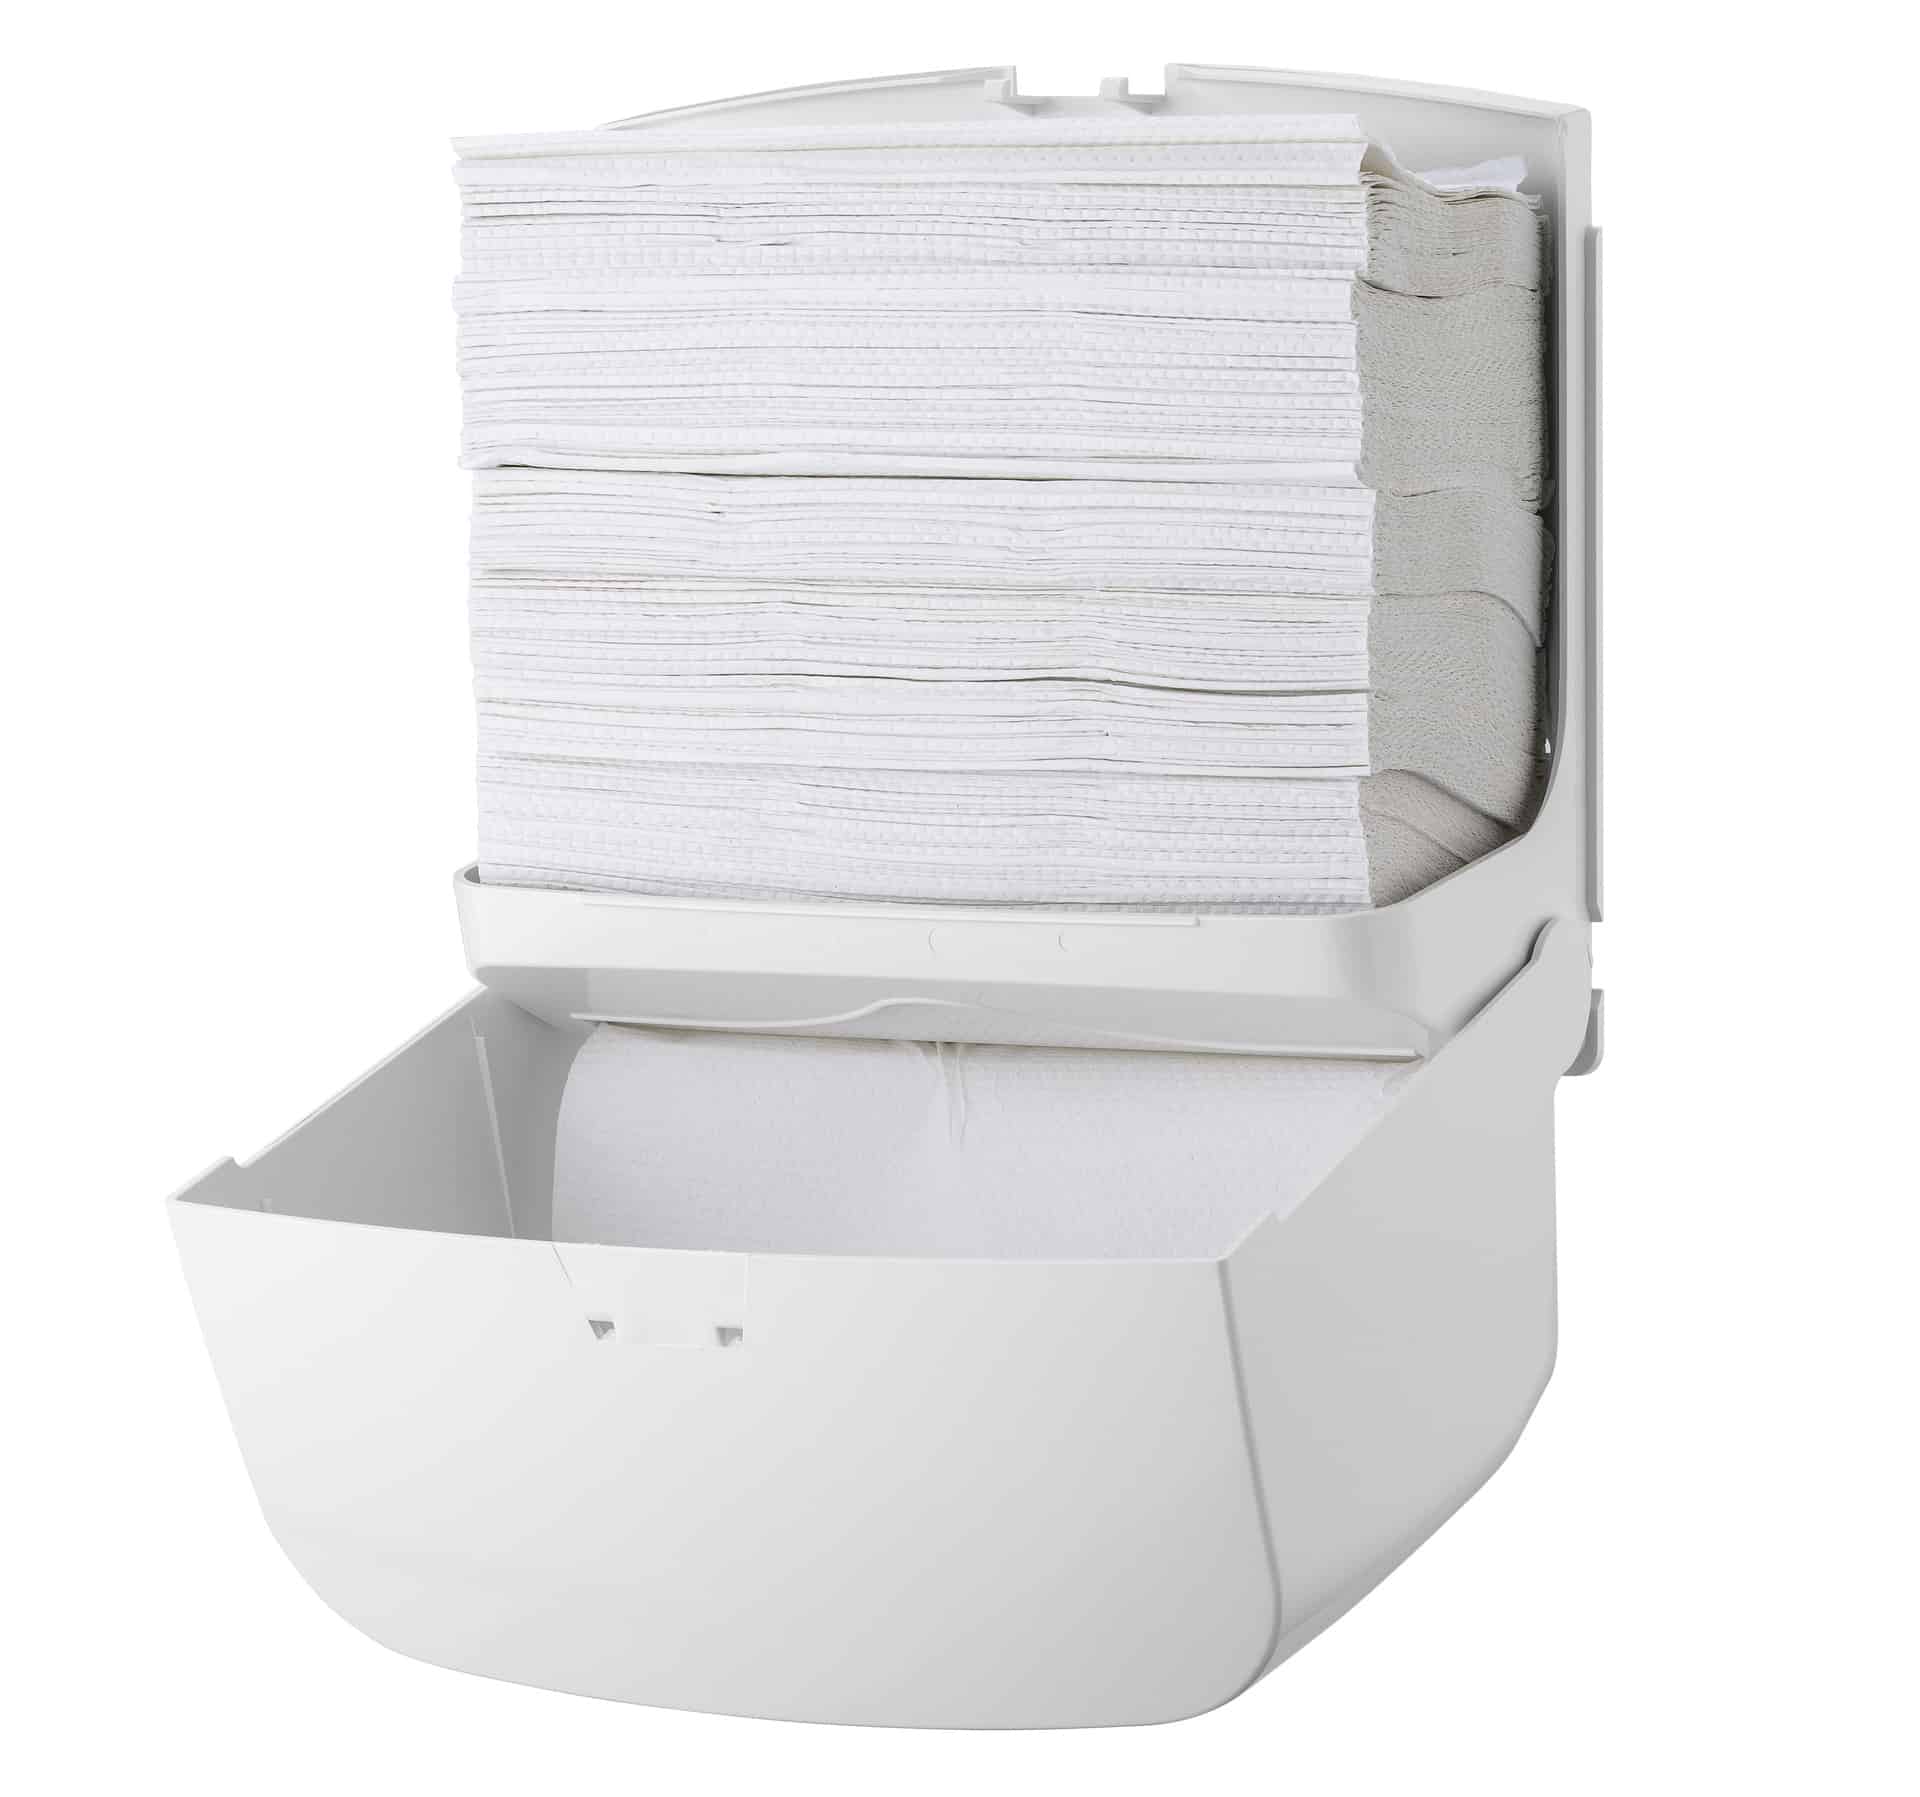 DiDoClean Handdoekdispenser Mini Papieren Handdoekjes